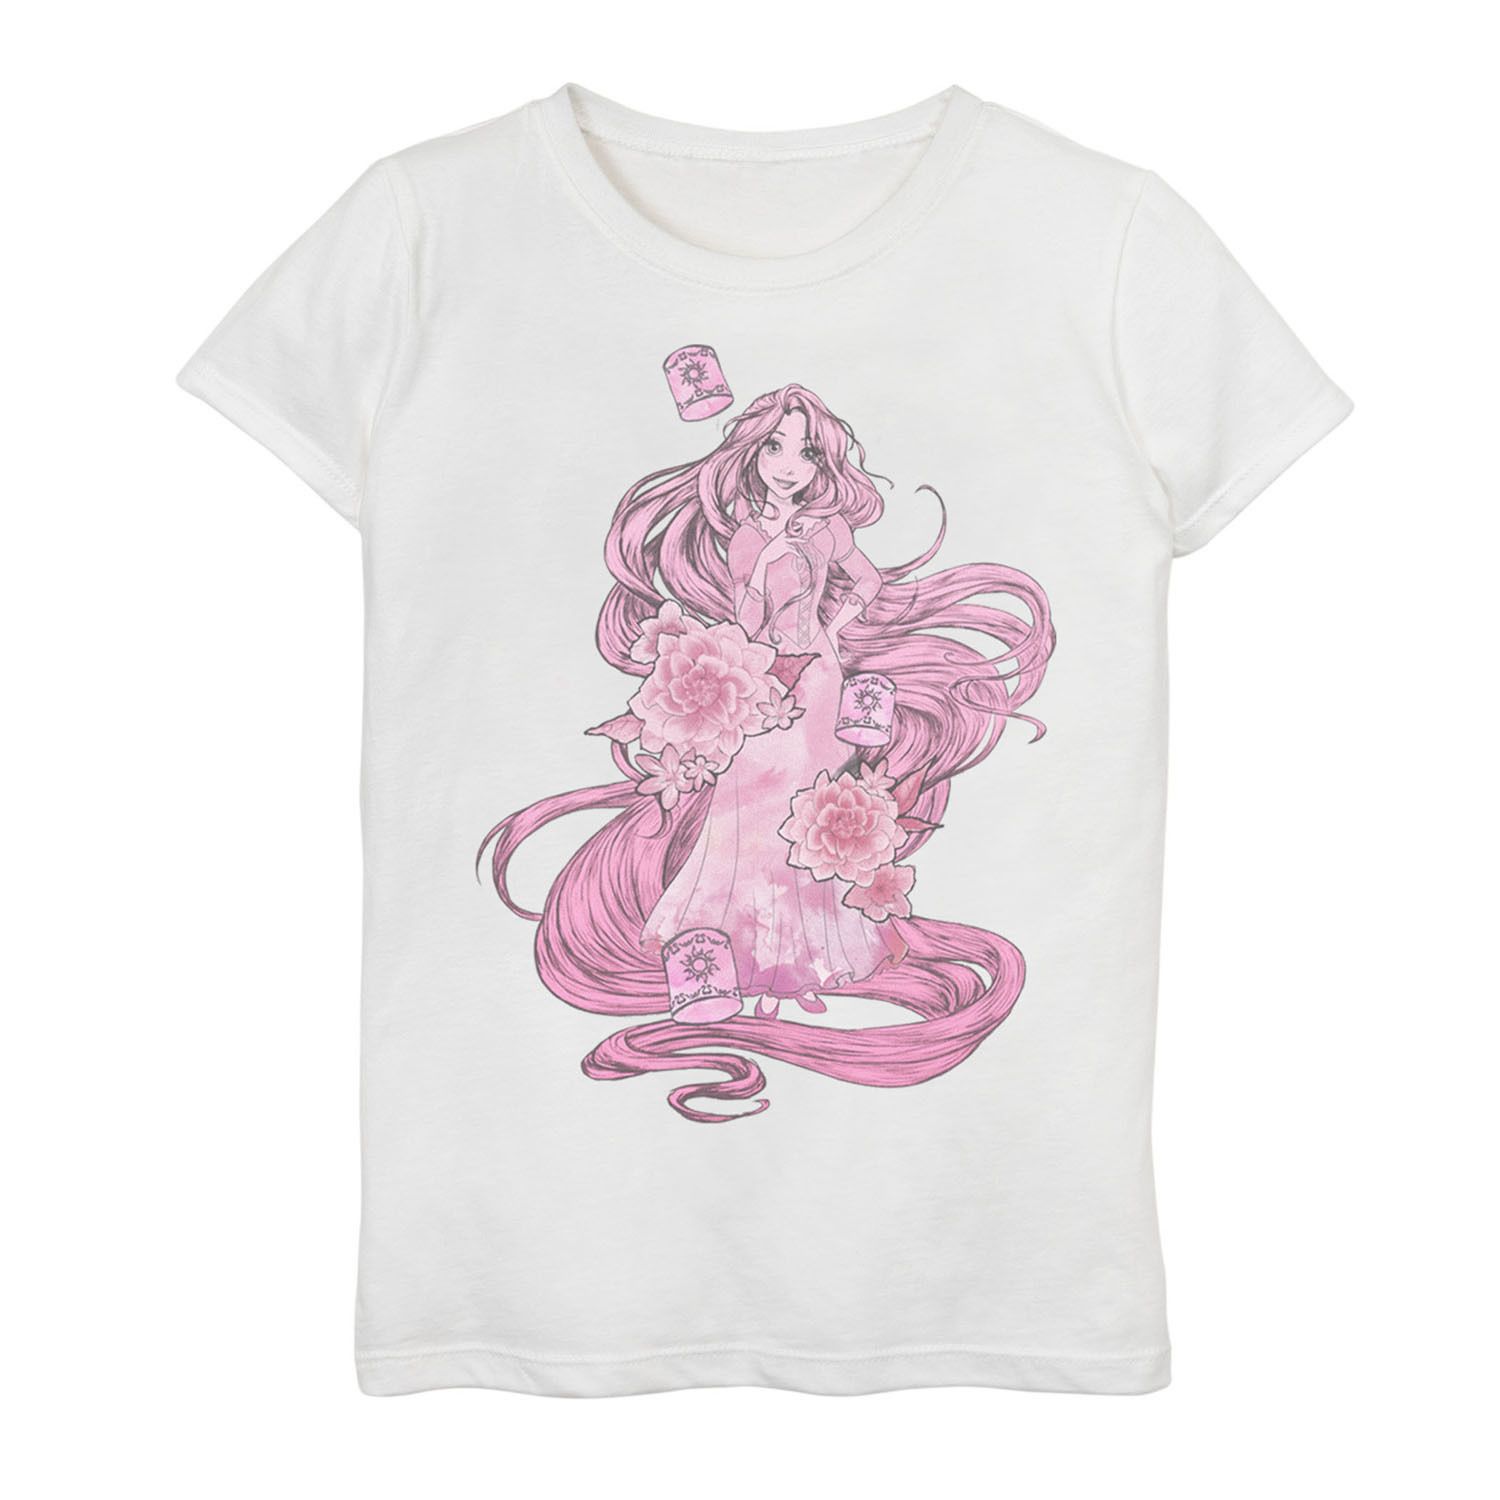 Розовая футболка Disney's Tangled с портретным рисунком для девочек 7–16 лет Disney